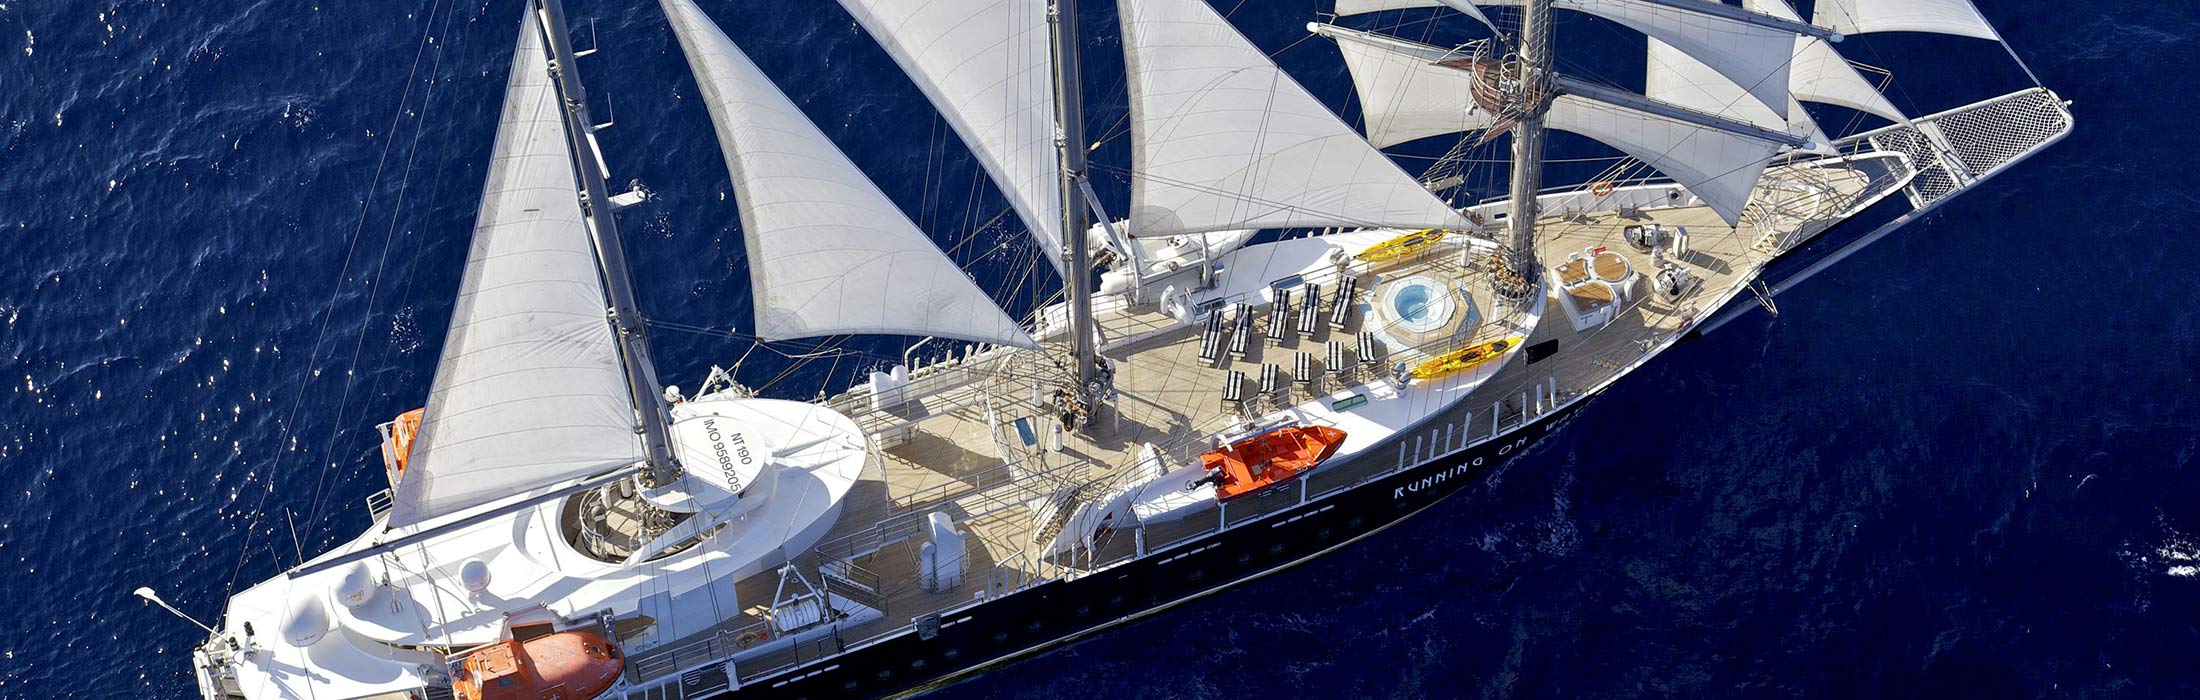 luxury yacht charter destinations mediterranean greece mykonos main slider 1 5